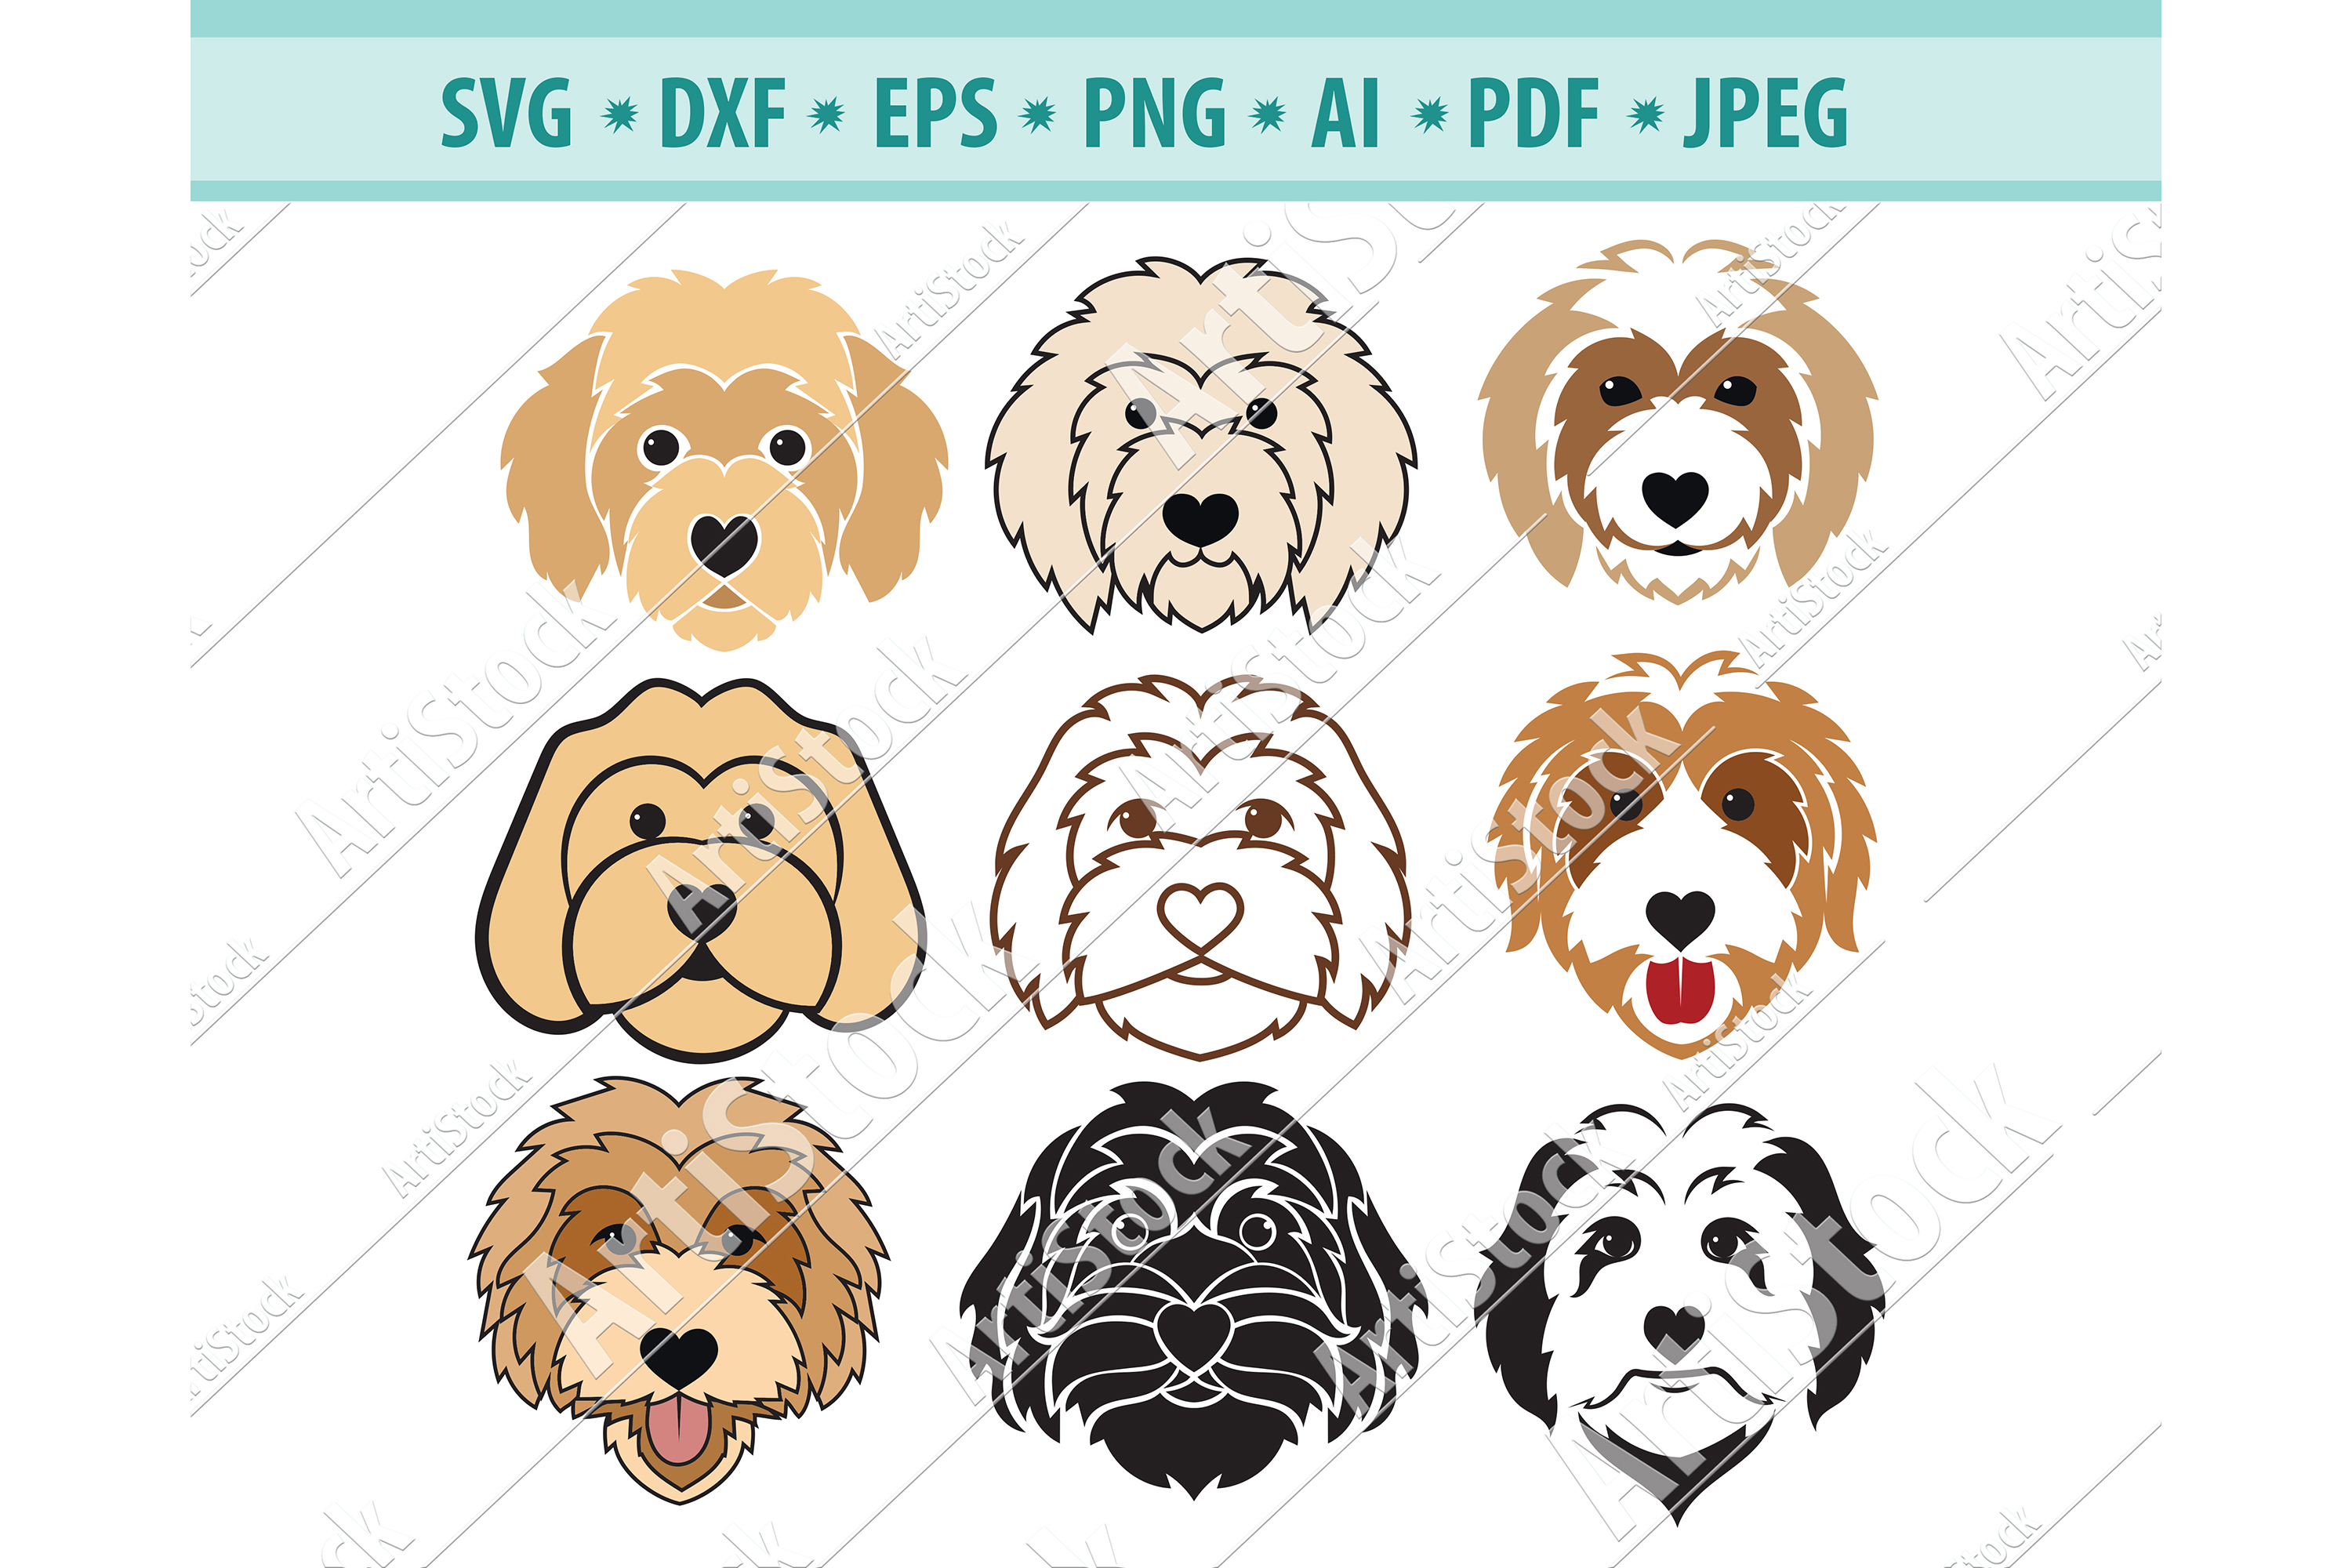 Goldendoodle SVG, Dog Silhouette SVG, Pets Dxf, Dog Png, Eps